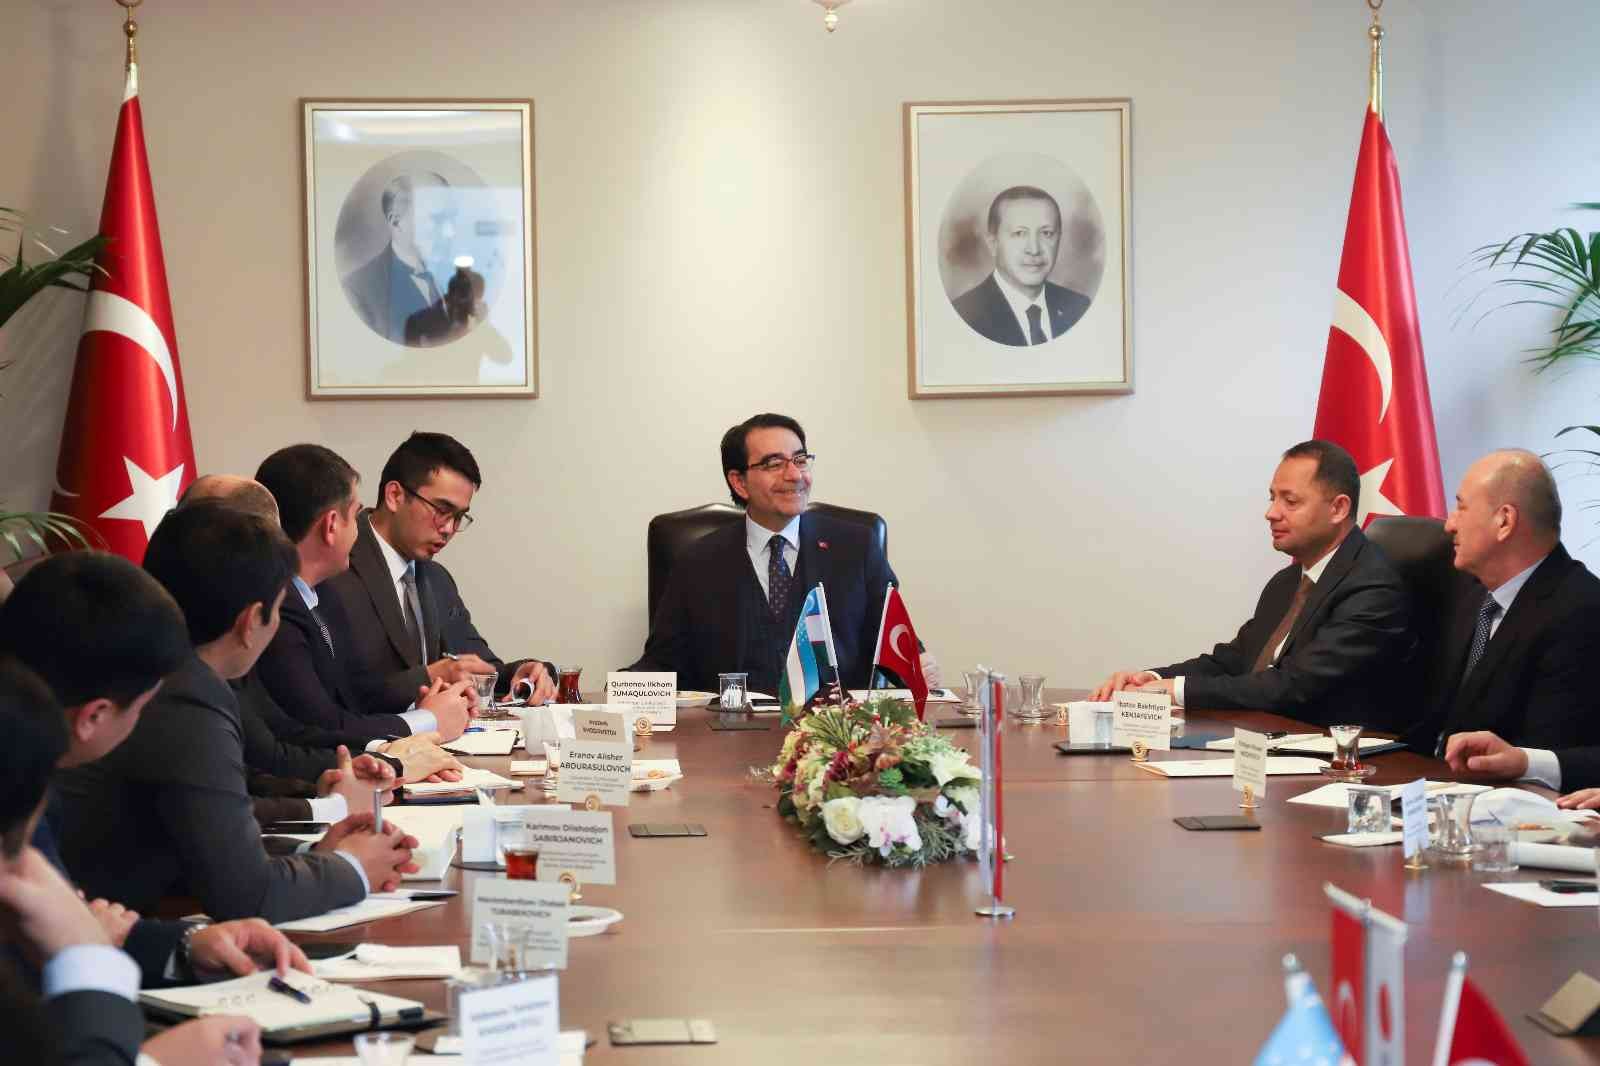 Kamu reformu çalışmalarına başlayan Özbekistan’a Türkiye’den destek